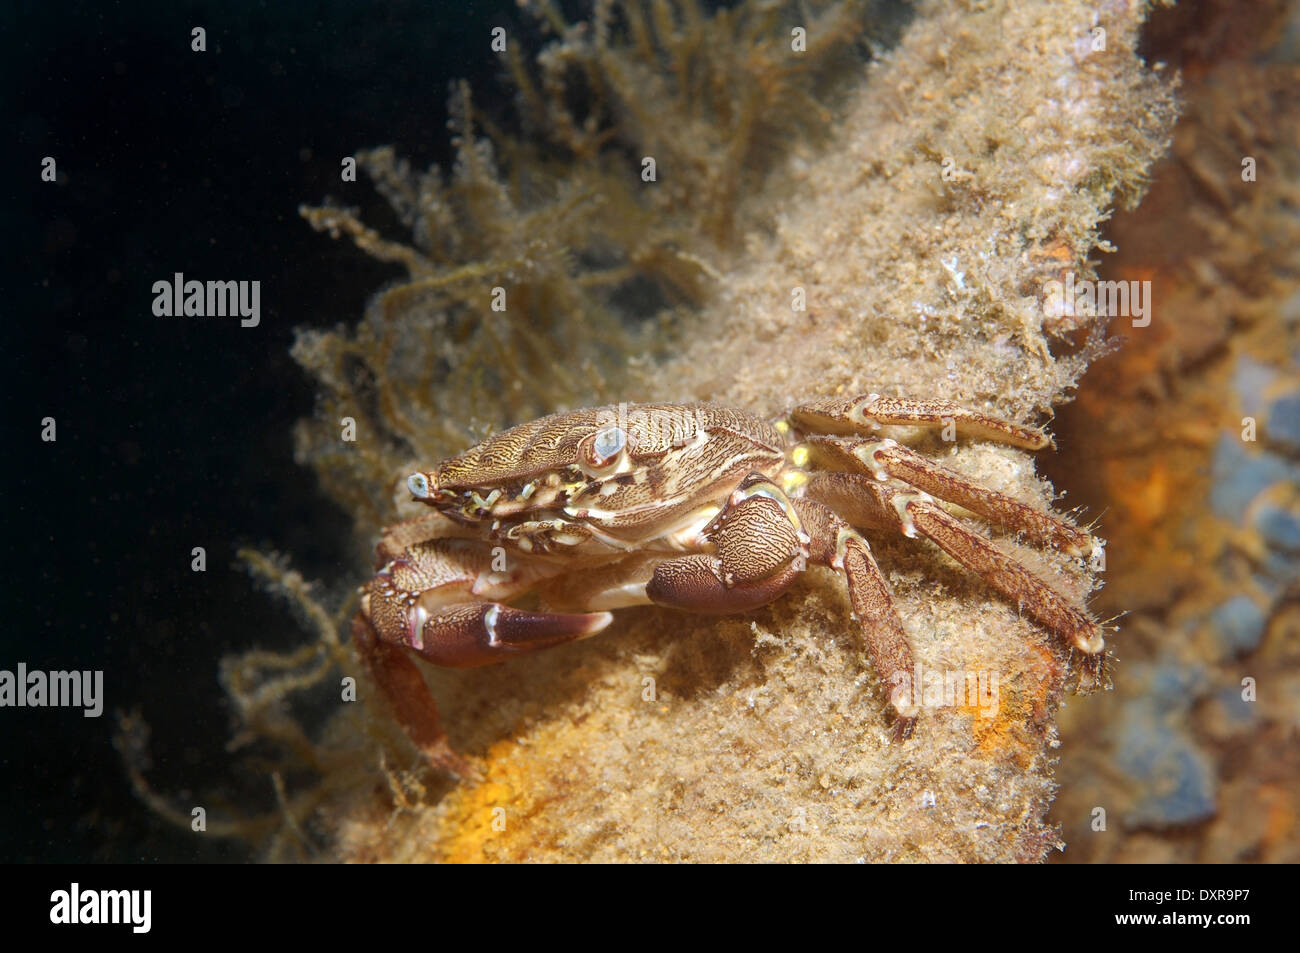 Crabe marbré ou crabe marbré (Pachygrapsus marmoratus) Mer Noire, la Crimée, la Russie Banque D'Images